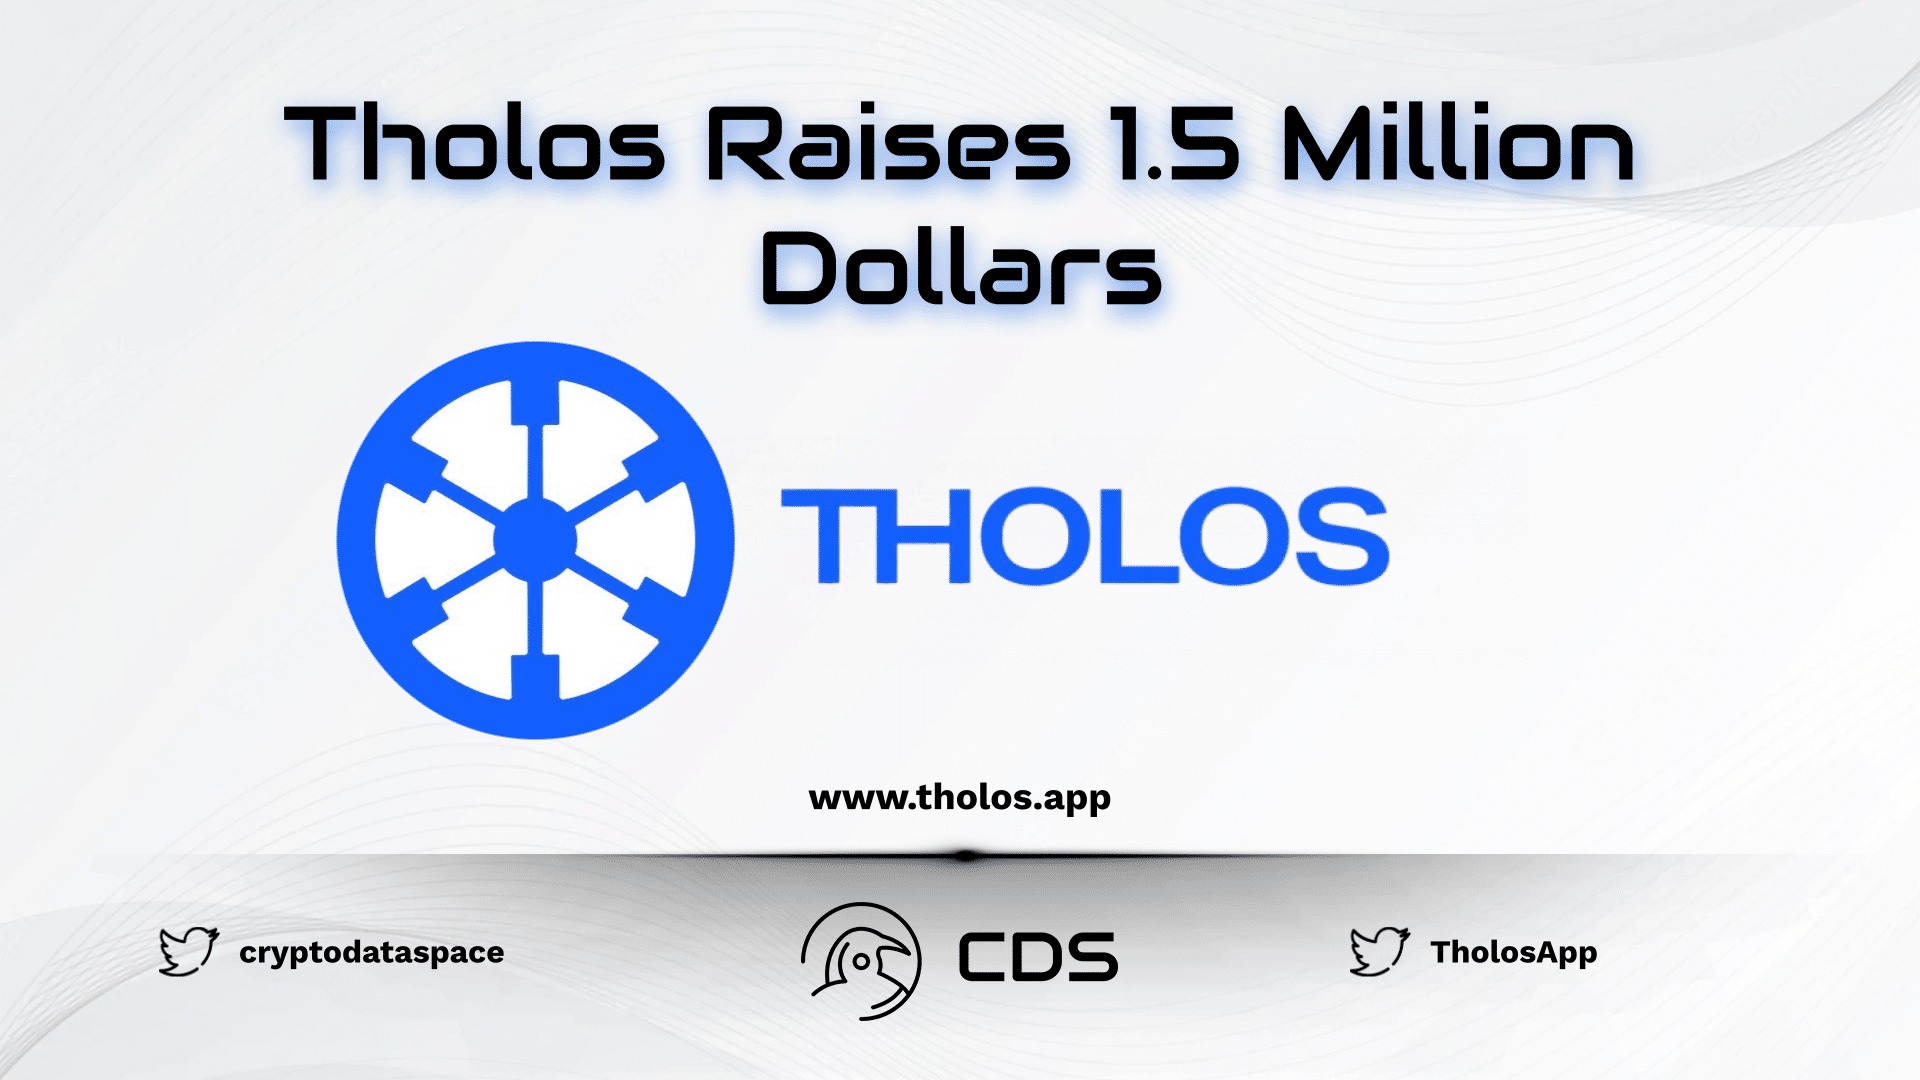 Tholos Raises 1.5 Million Dollars